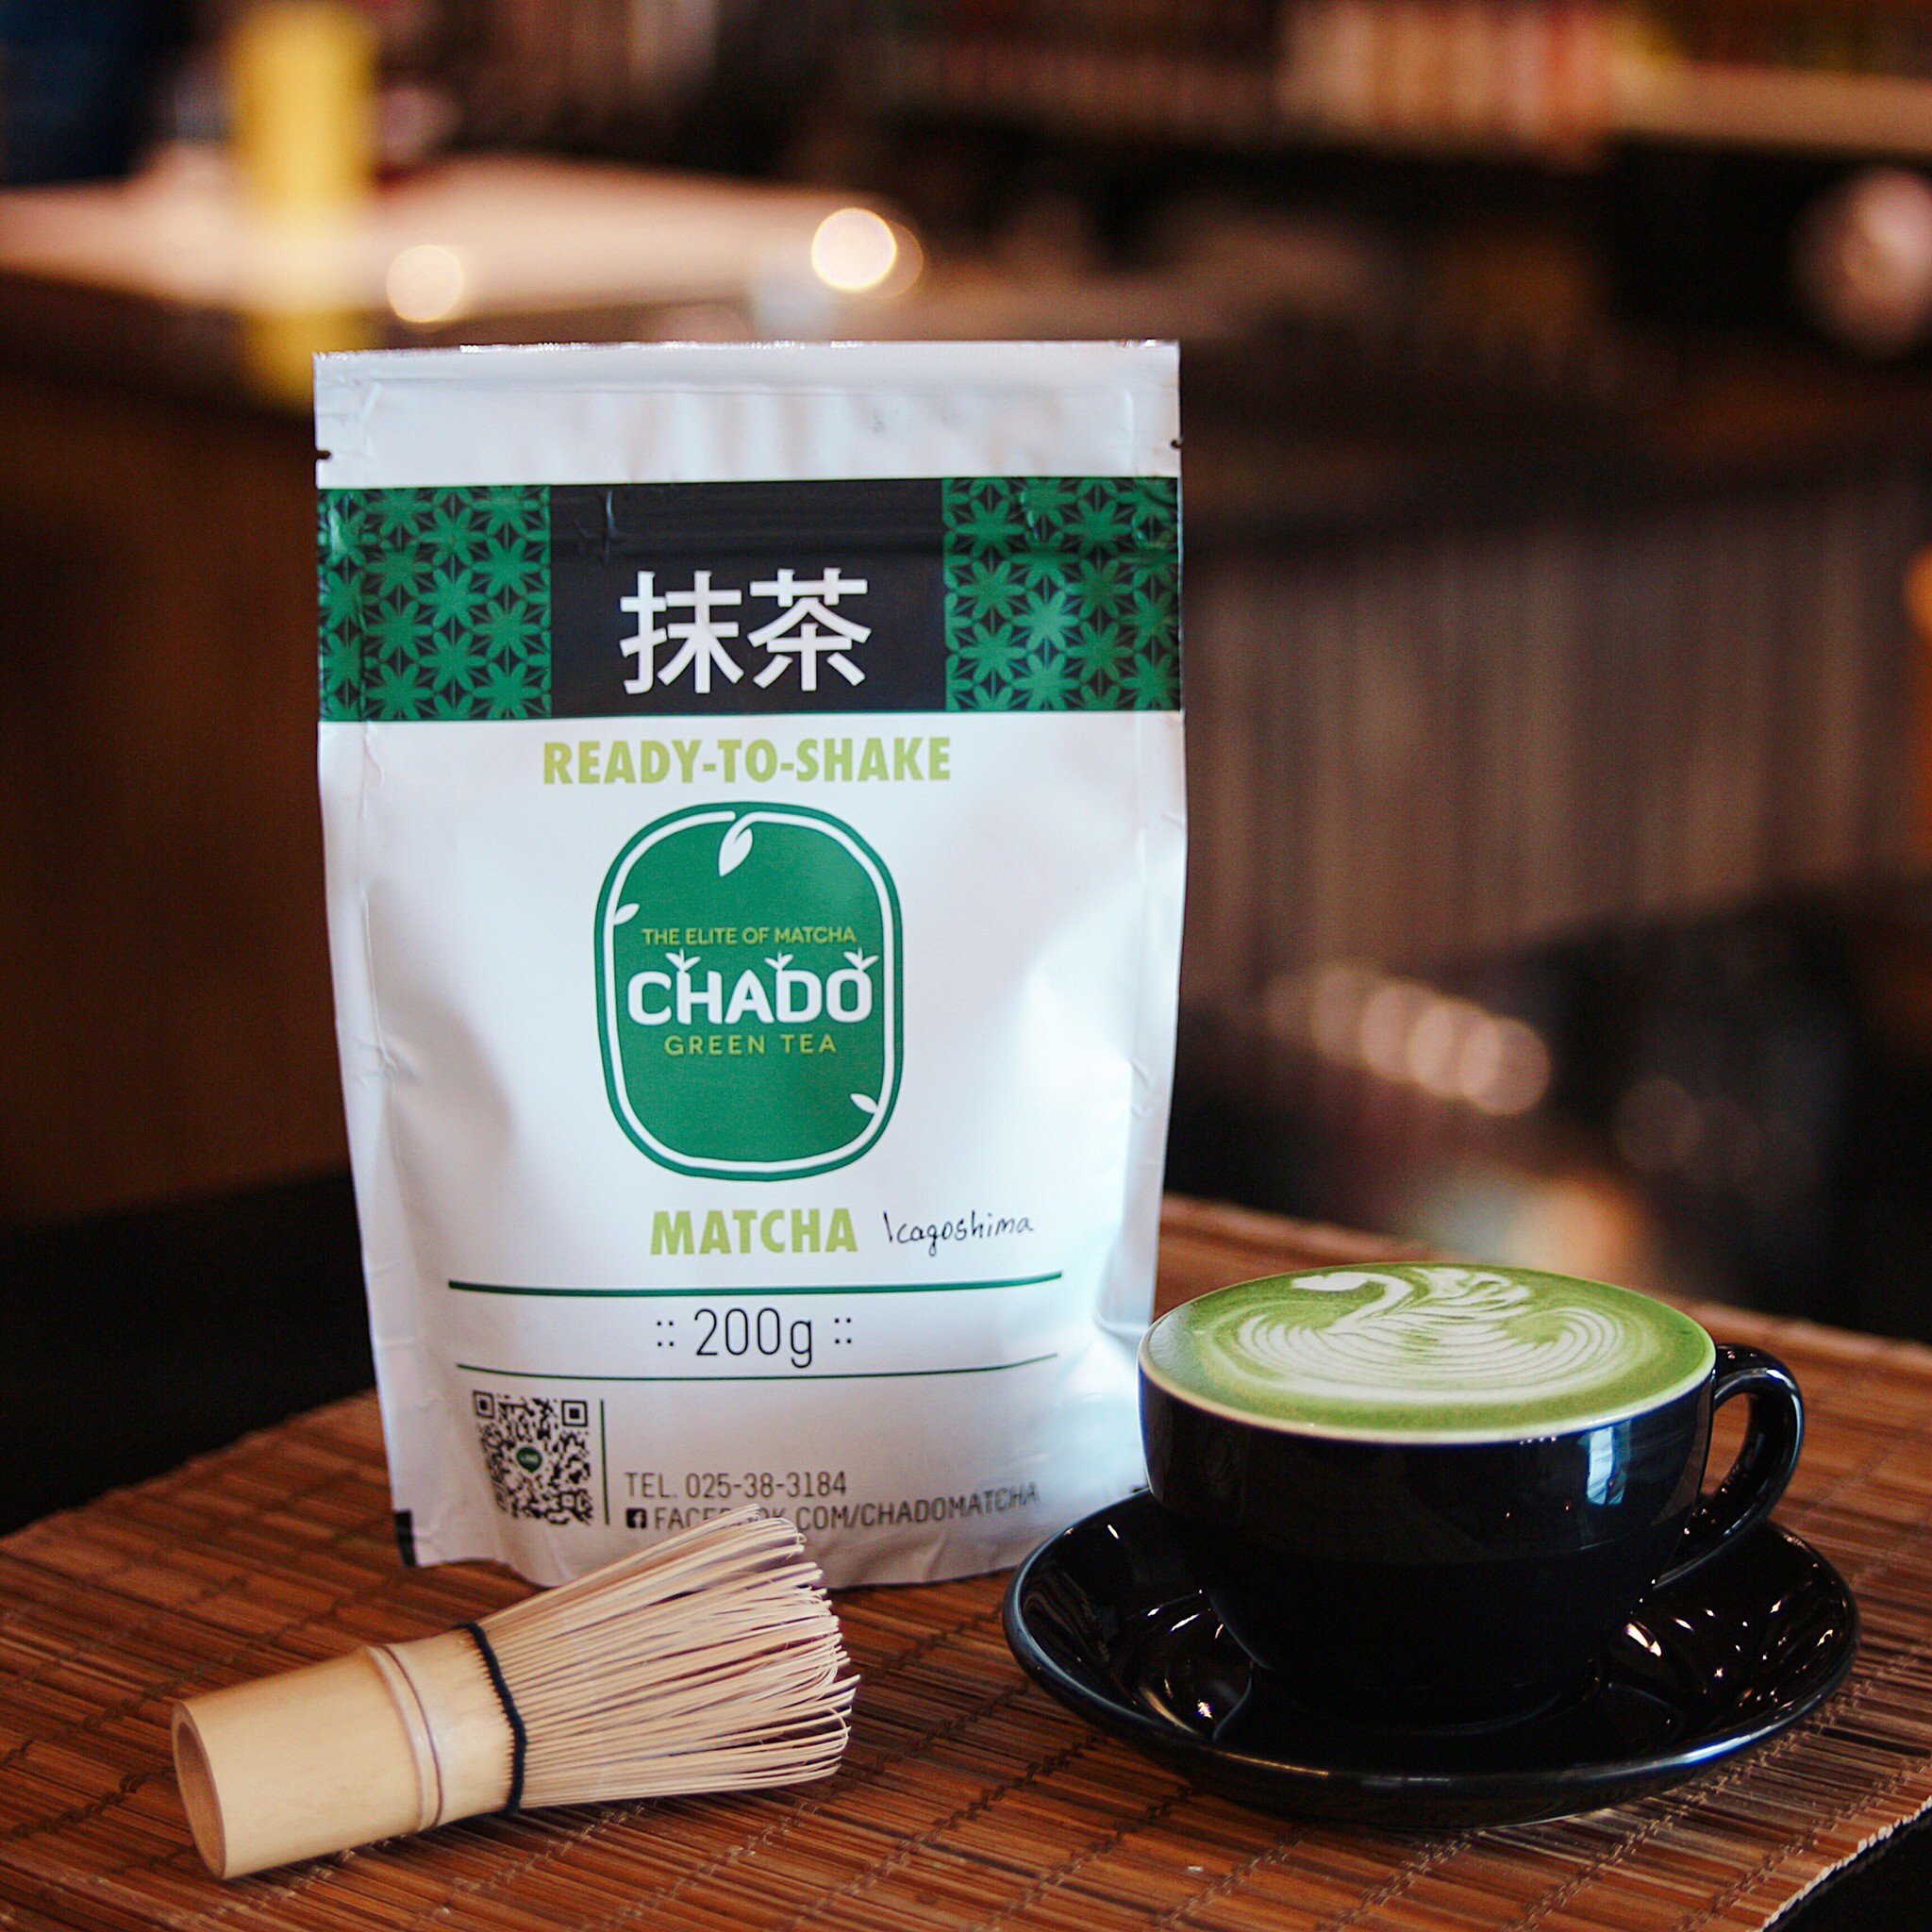 ข้อมูลเพิ่มเติมของ CHADO Kagoshima Matcha คาโกชิม่า มัทฉะ ผงชาเขียว พร้อมชง ตรา ชาโดะ ขนาด 200 กรัม